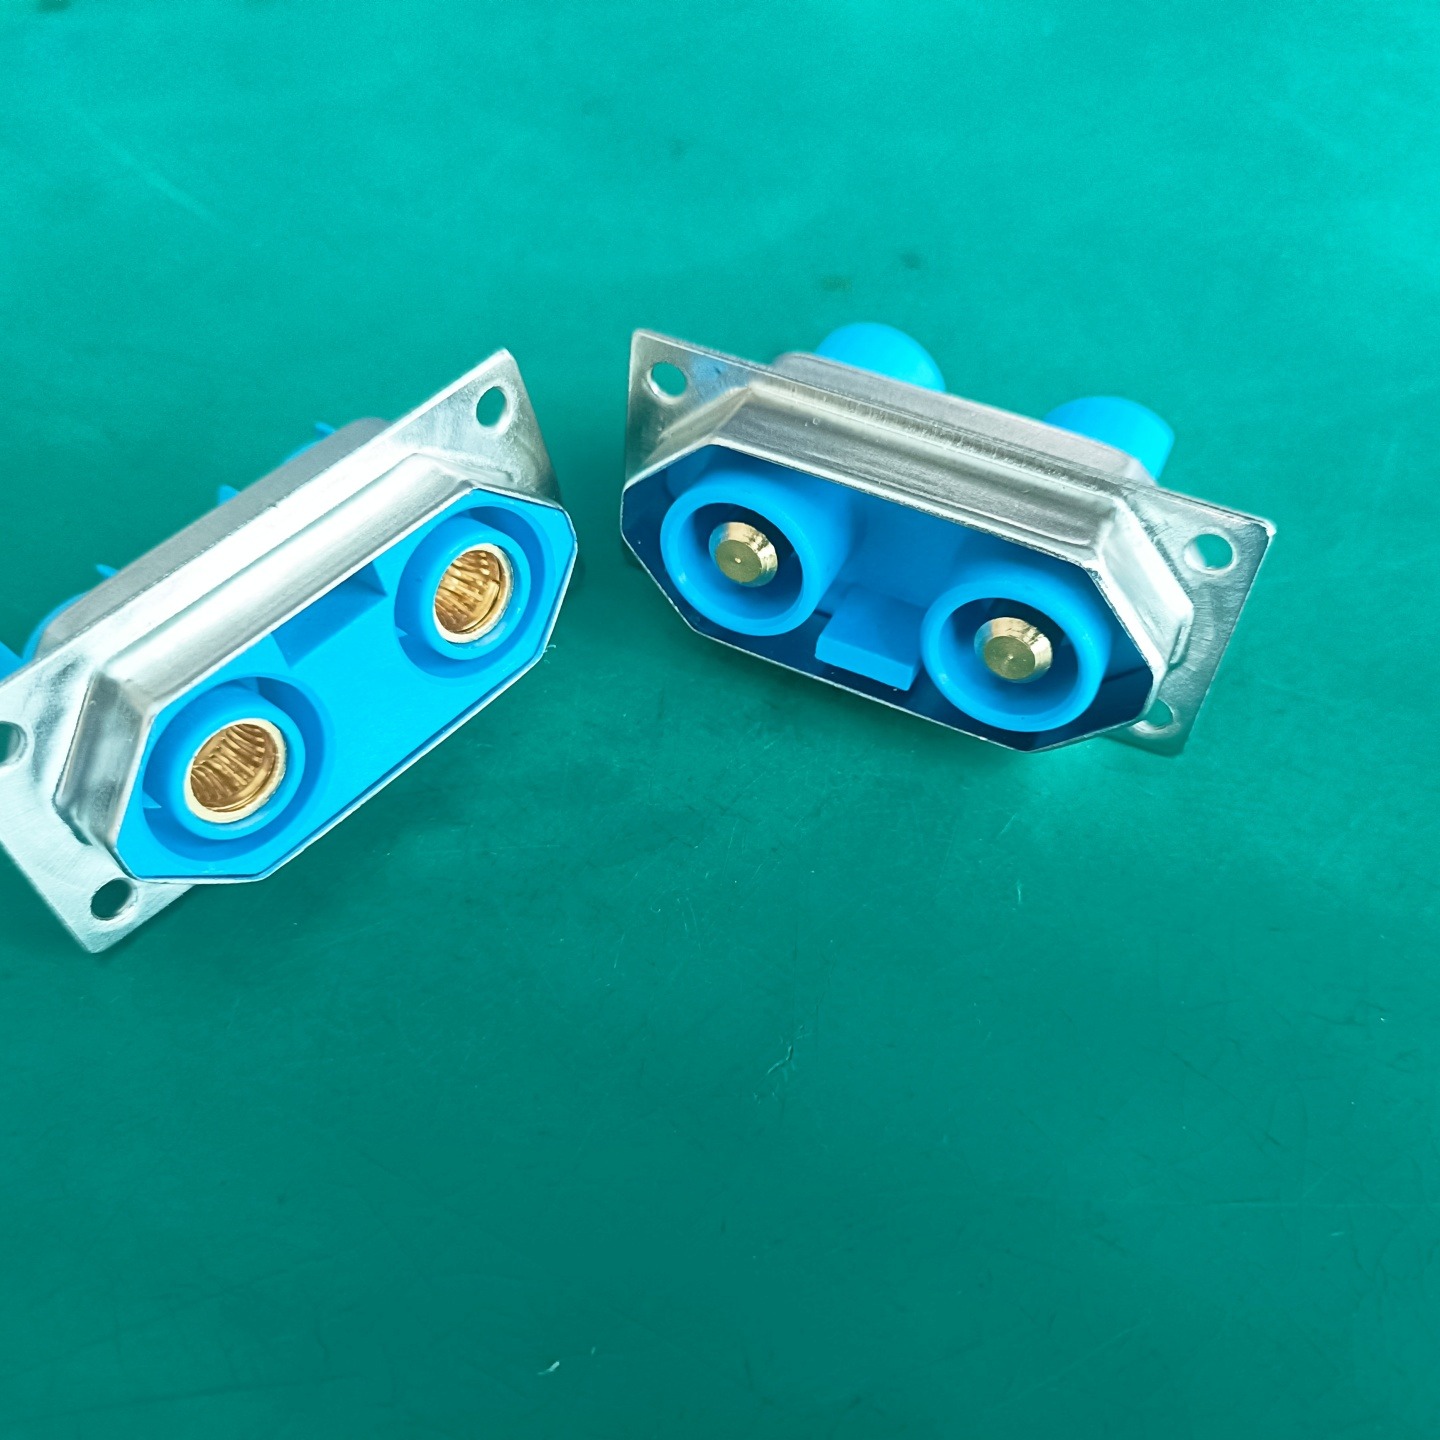 2芯大电流连接器  可用于机箱外部接口  冠簧插孔  带铁壳屏蔽 防止电磁干扰  储能连接器  电池连接器